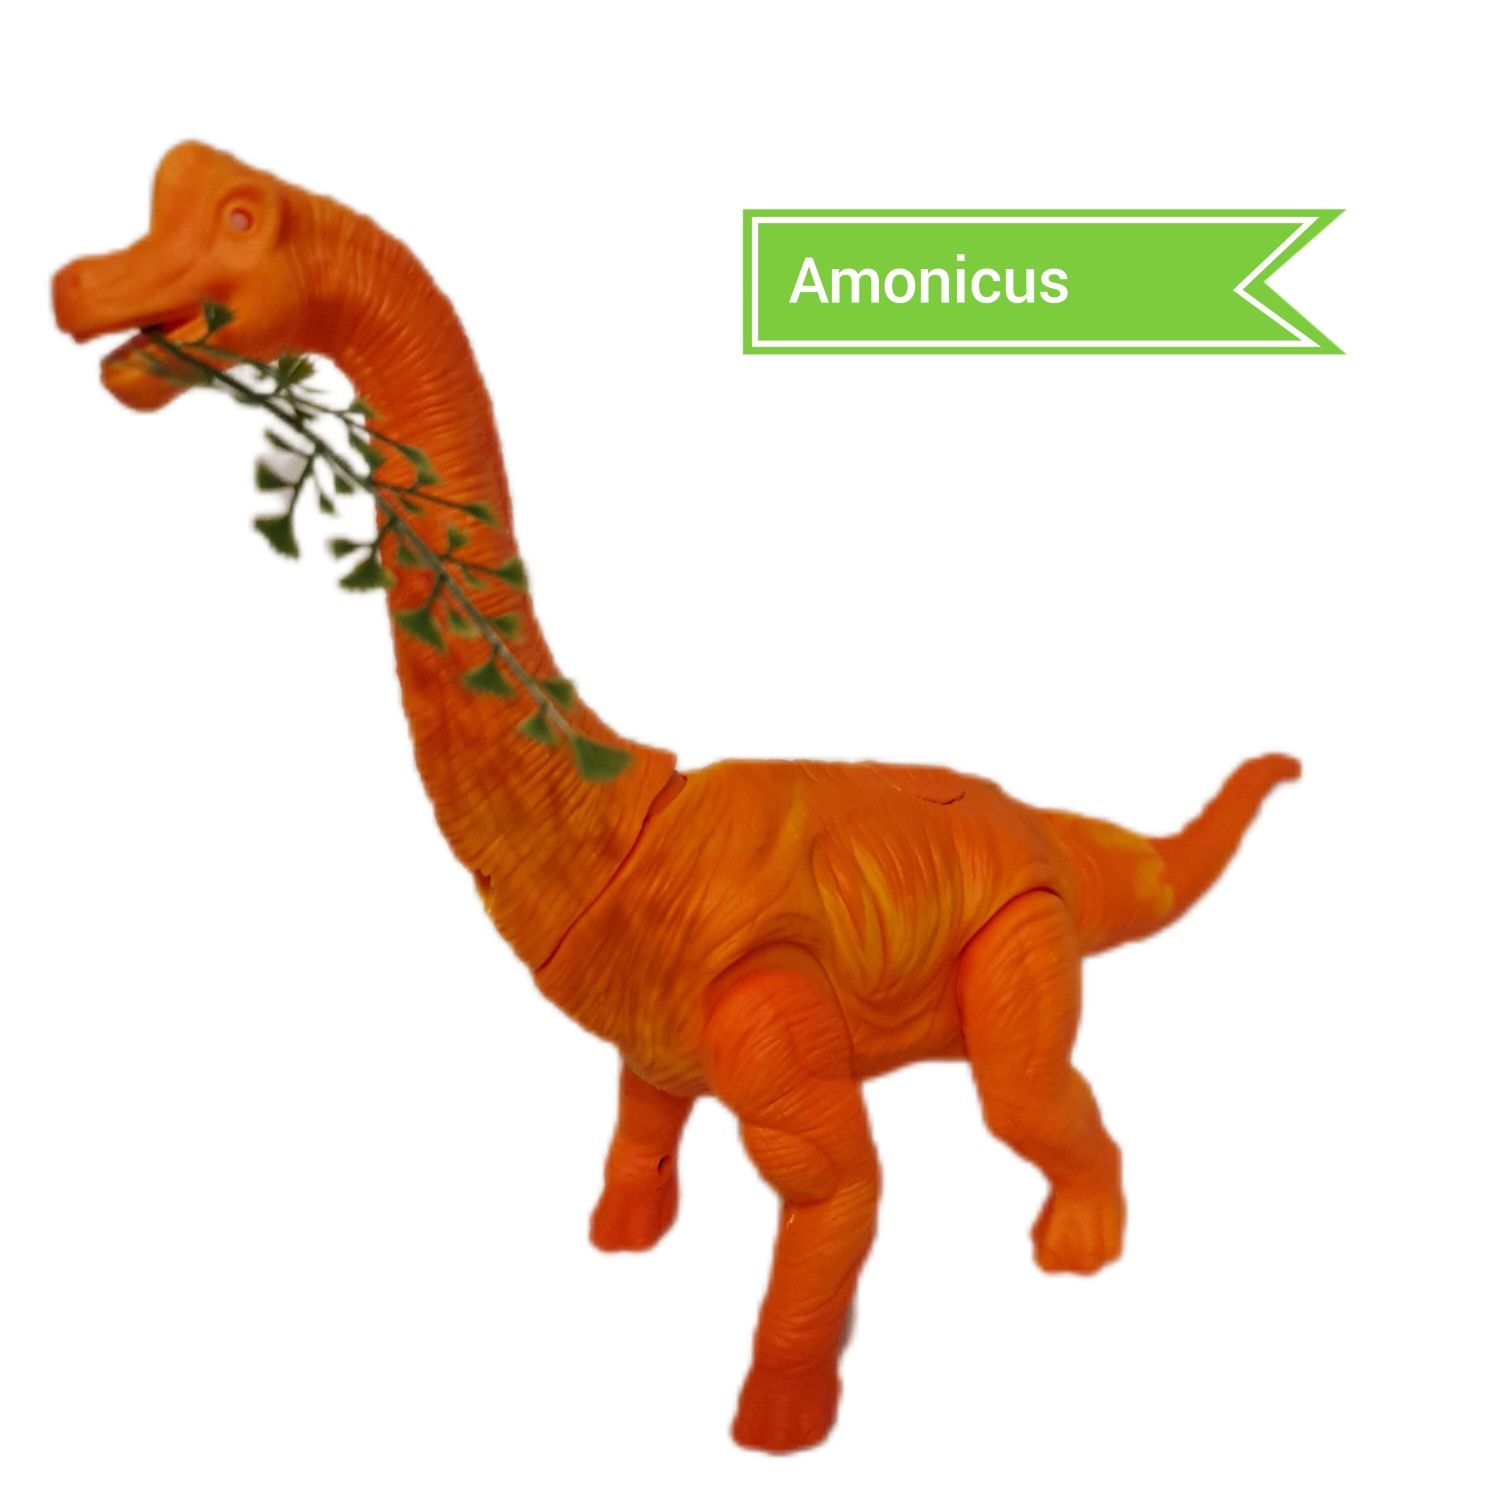 Dinozaur  - Brachiozaur znoszący jaja z projektorem